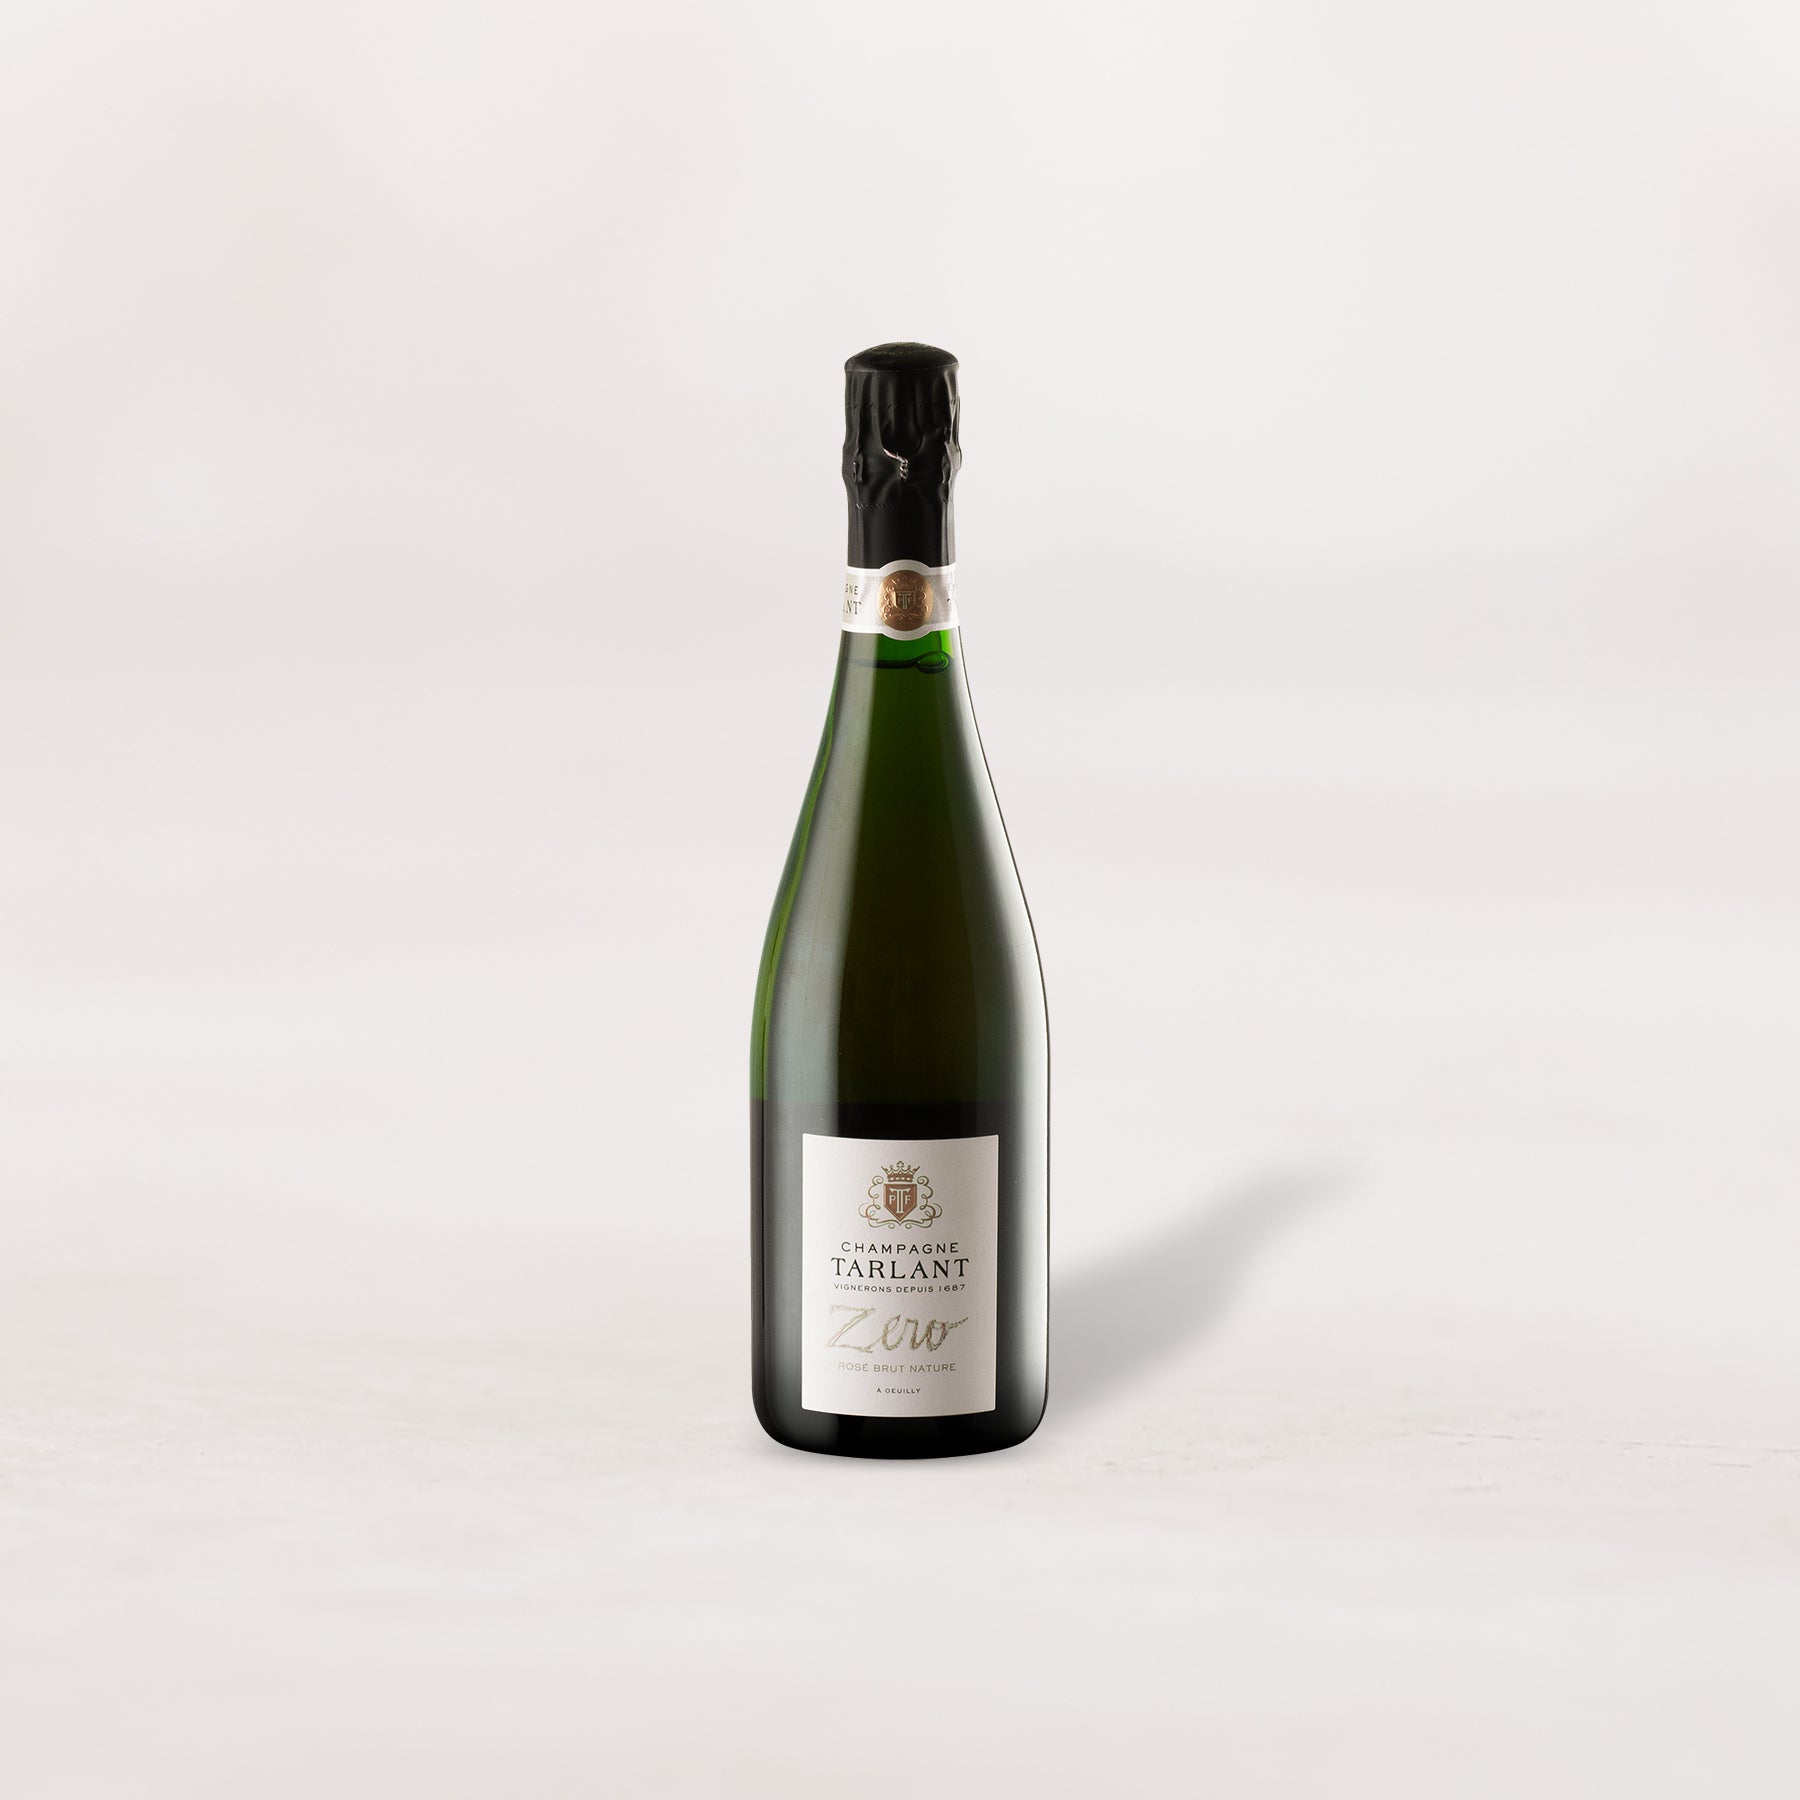 Champagne Tarlant, Brut Nature, “Rosé Zero”